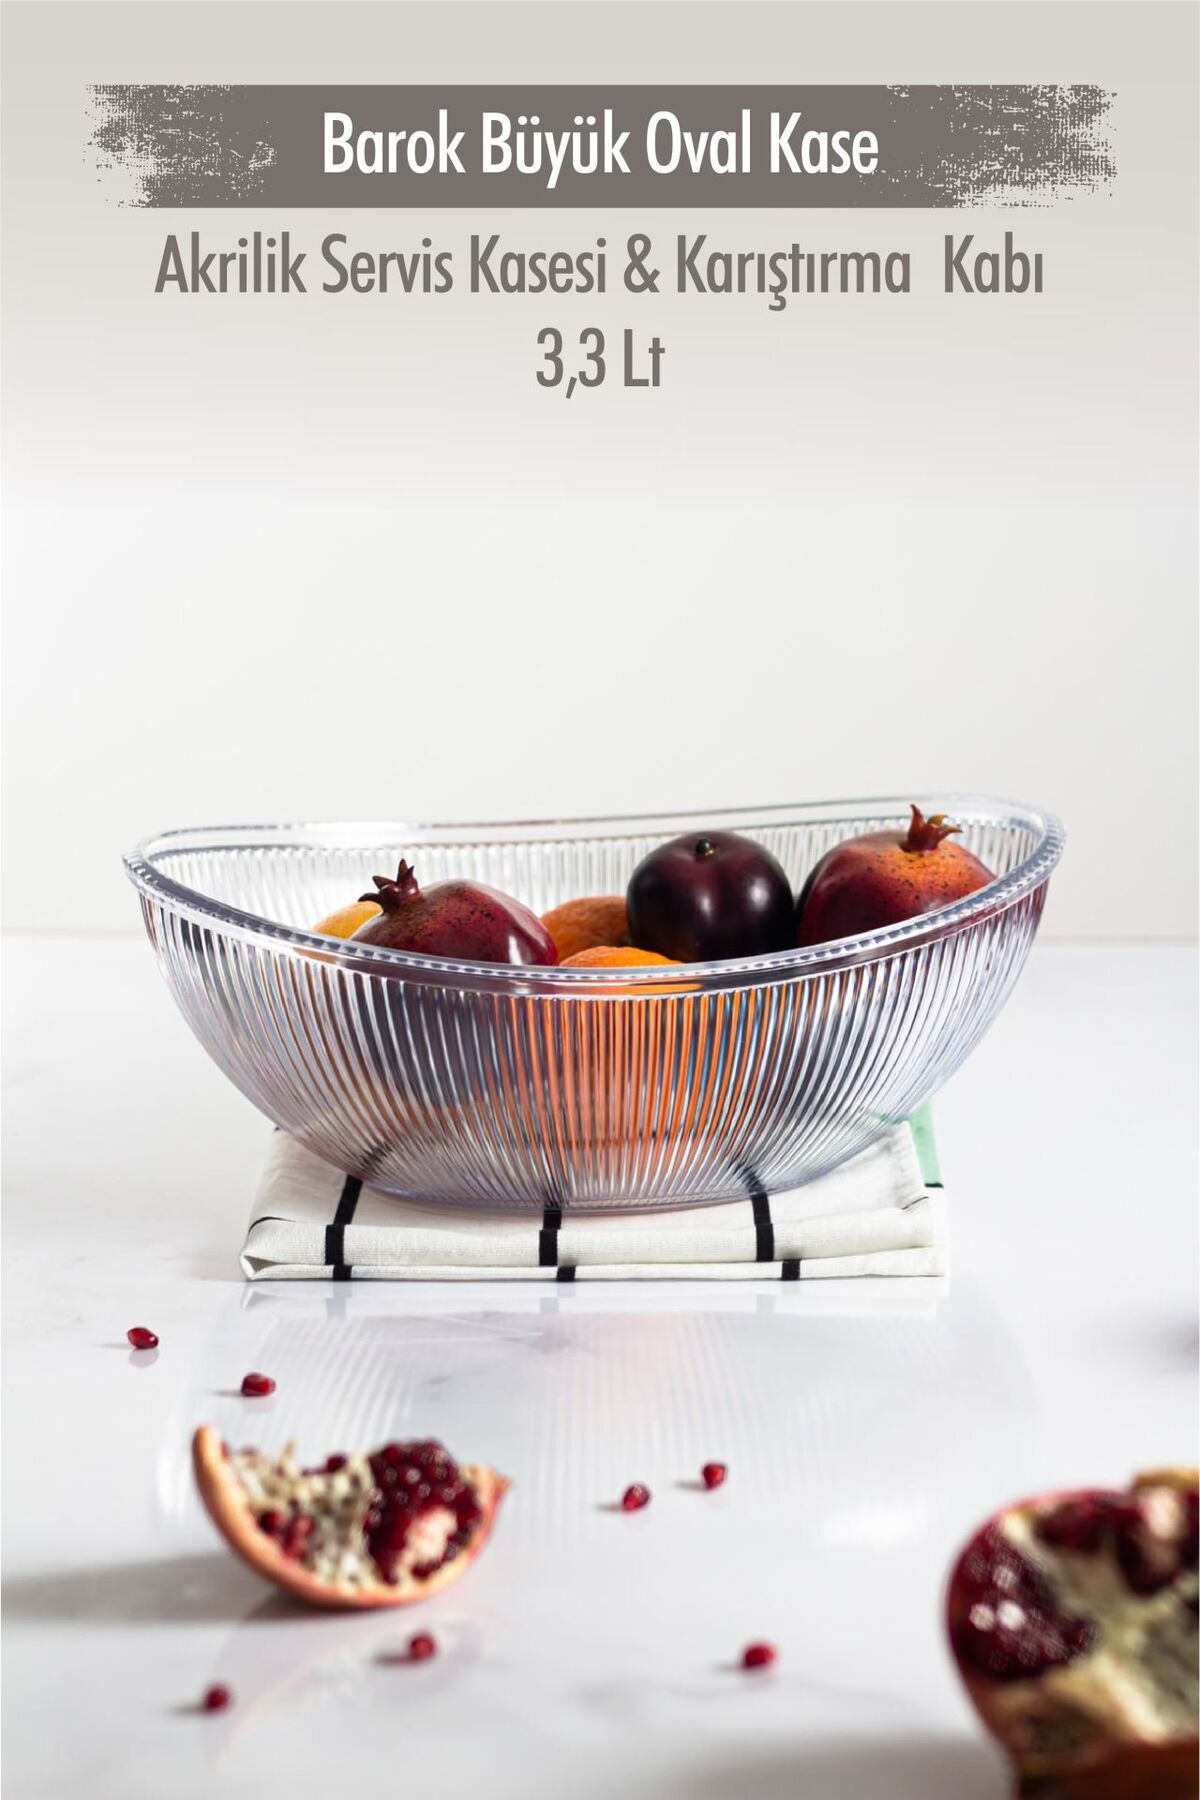 Depa Akrilik Barok Şeffaf Büyük Oval Meyve & Salata Kasesi & Karıştırma Kabı / 3,3 Lt  (CAM DEĞİLDİR)